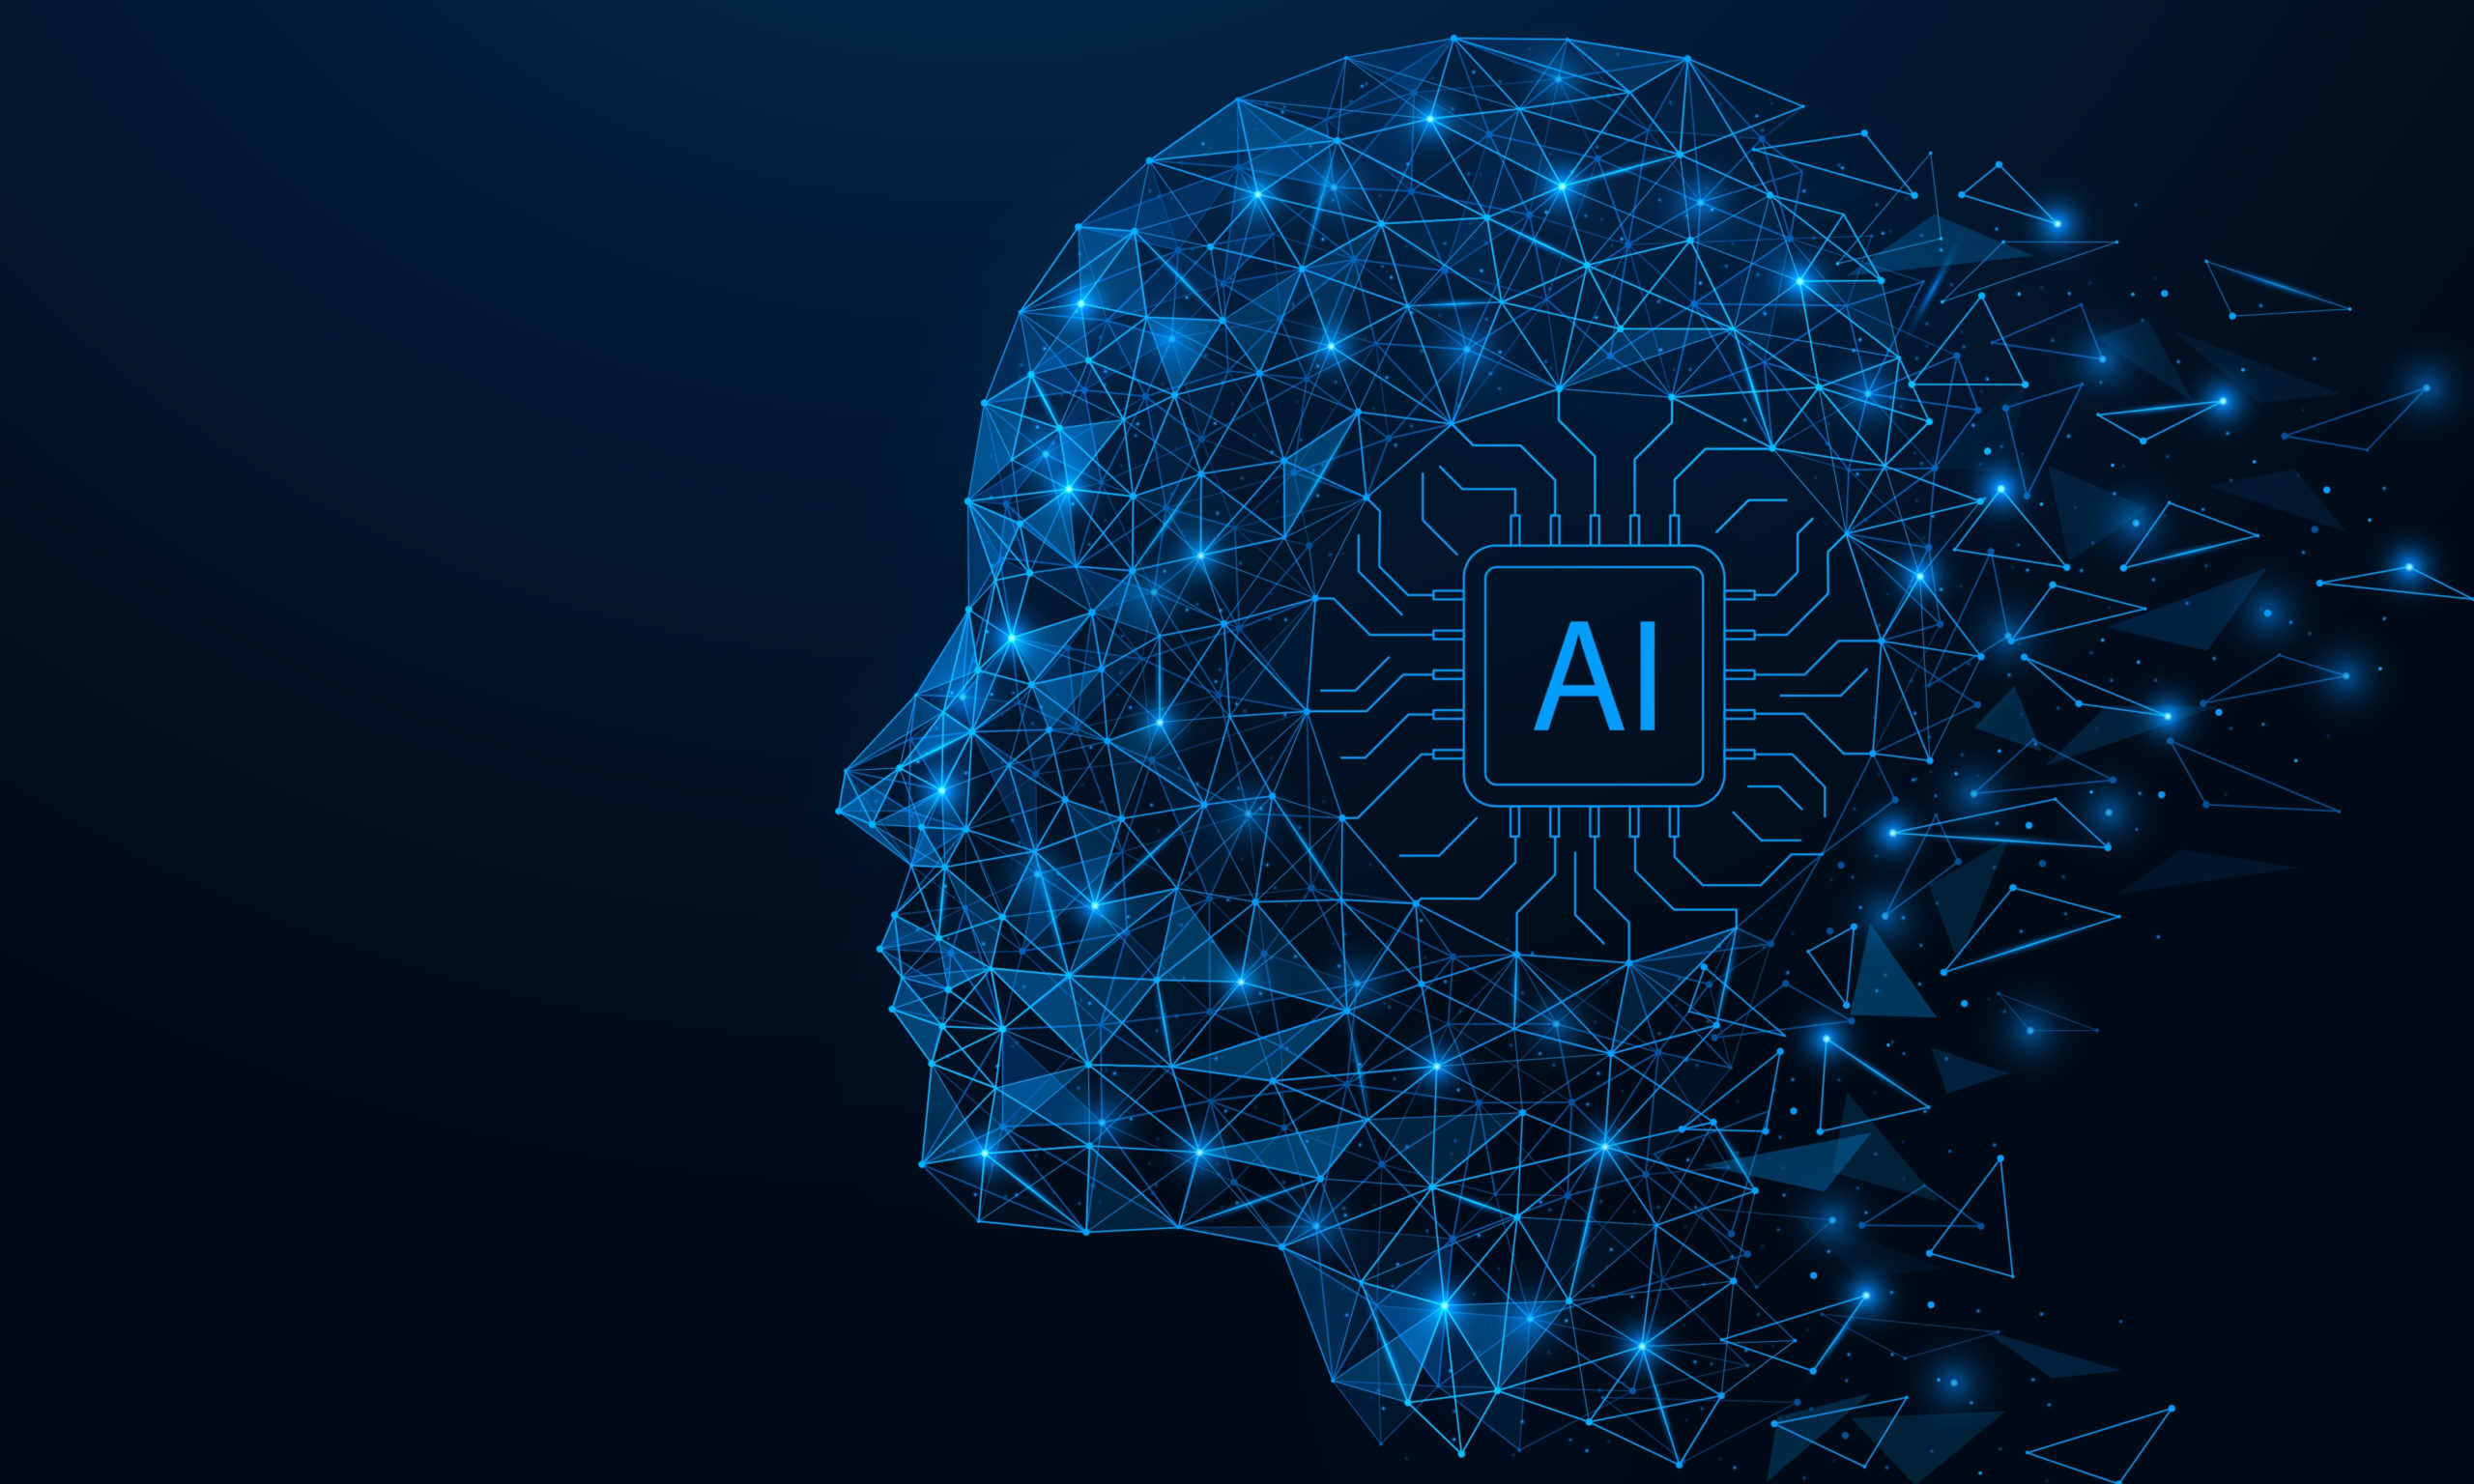 “Sztuczna inteligencja (AI) jako megatrend kształtujący edukację”. Nowa publikacja IBE